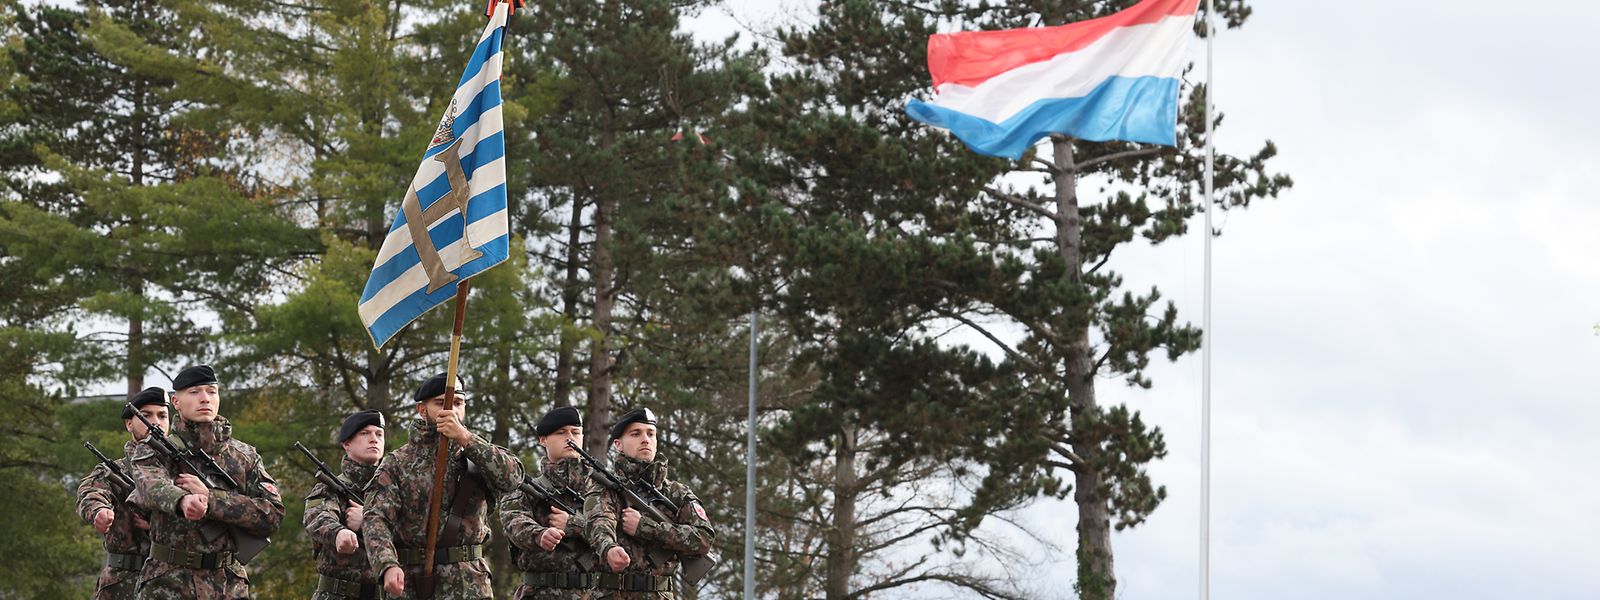 Les investissements se poursuivent pour l'armée luxembourgeoise.